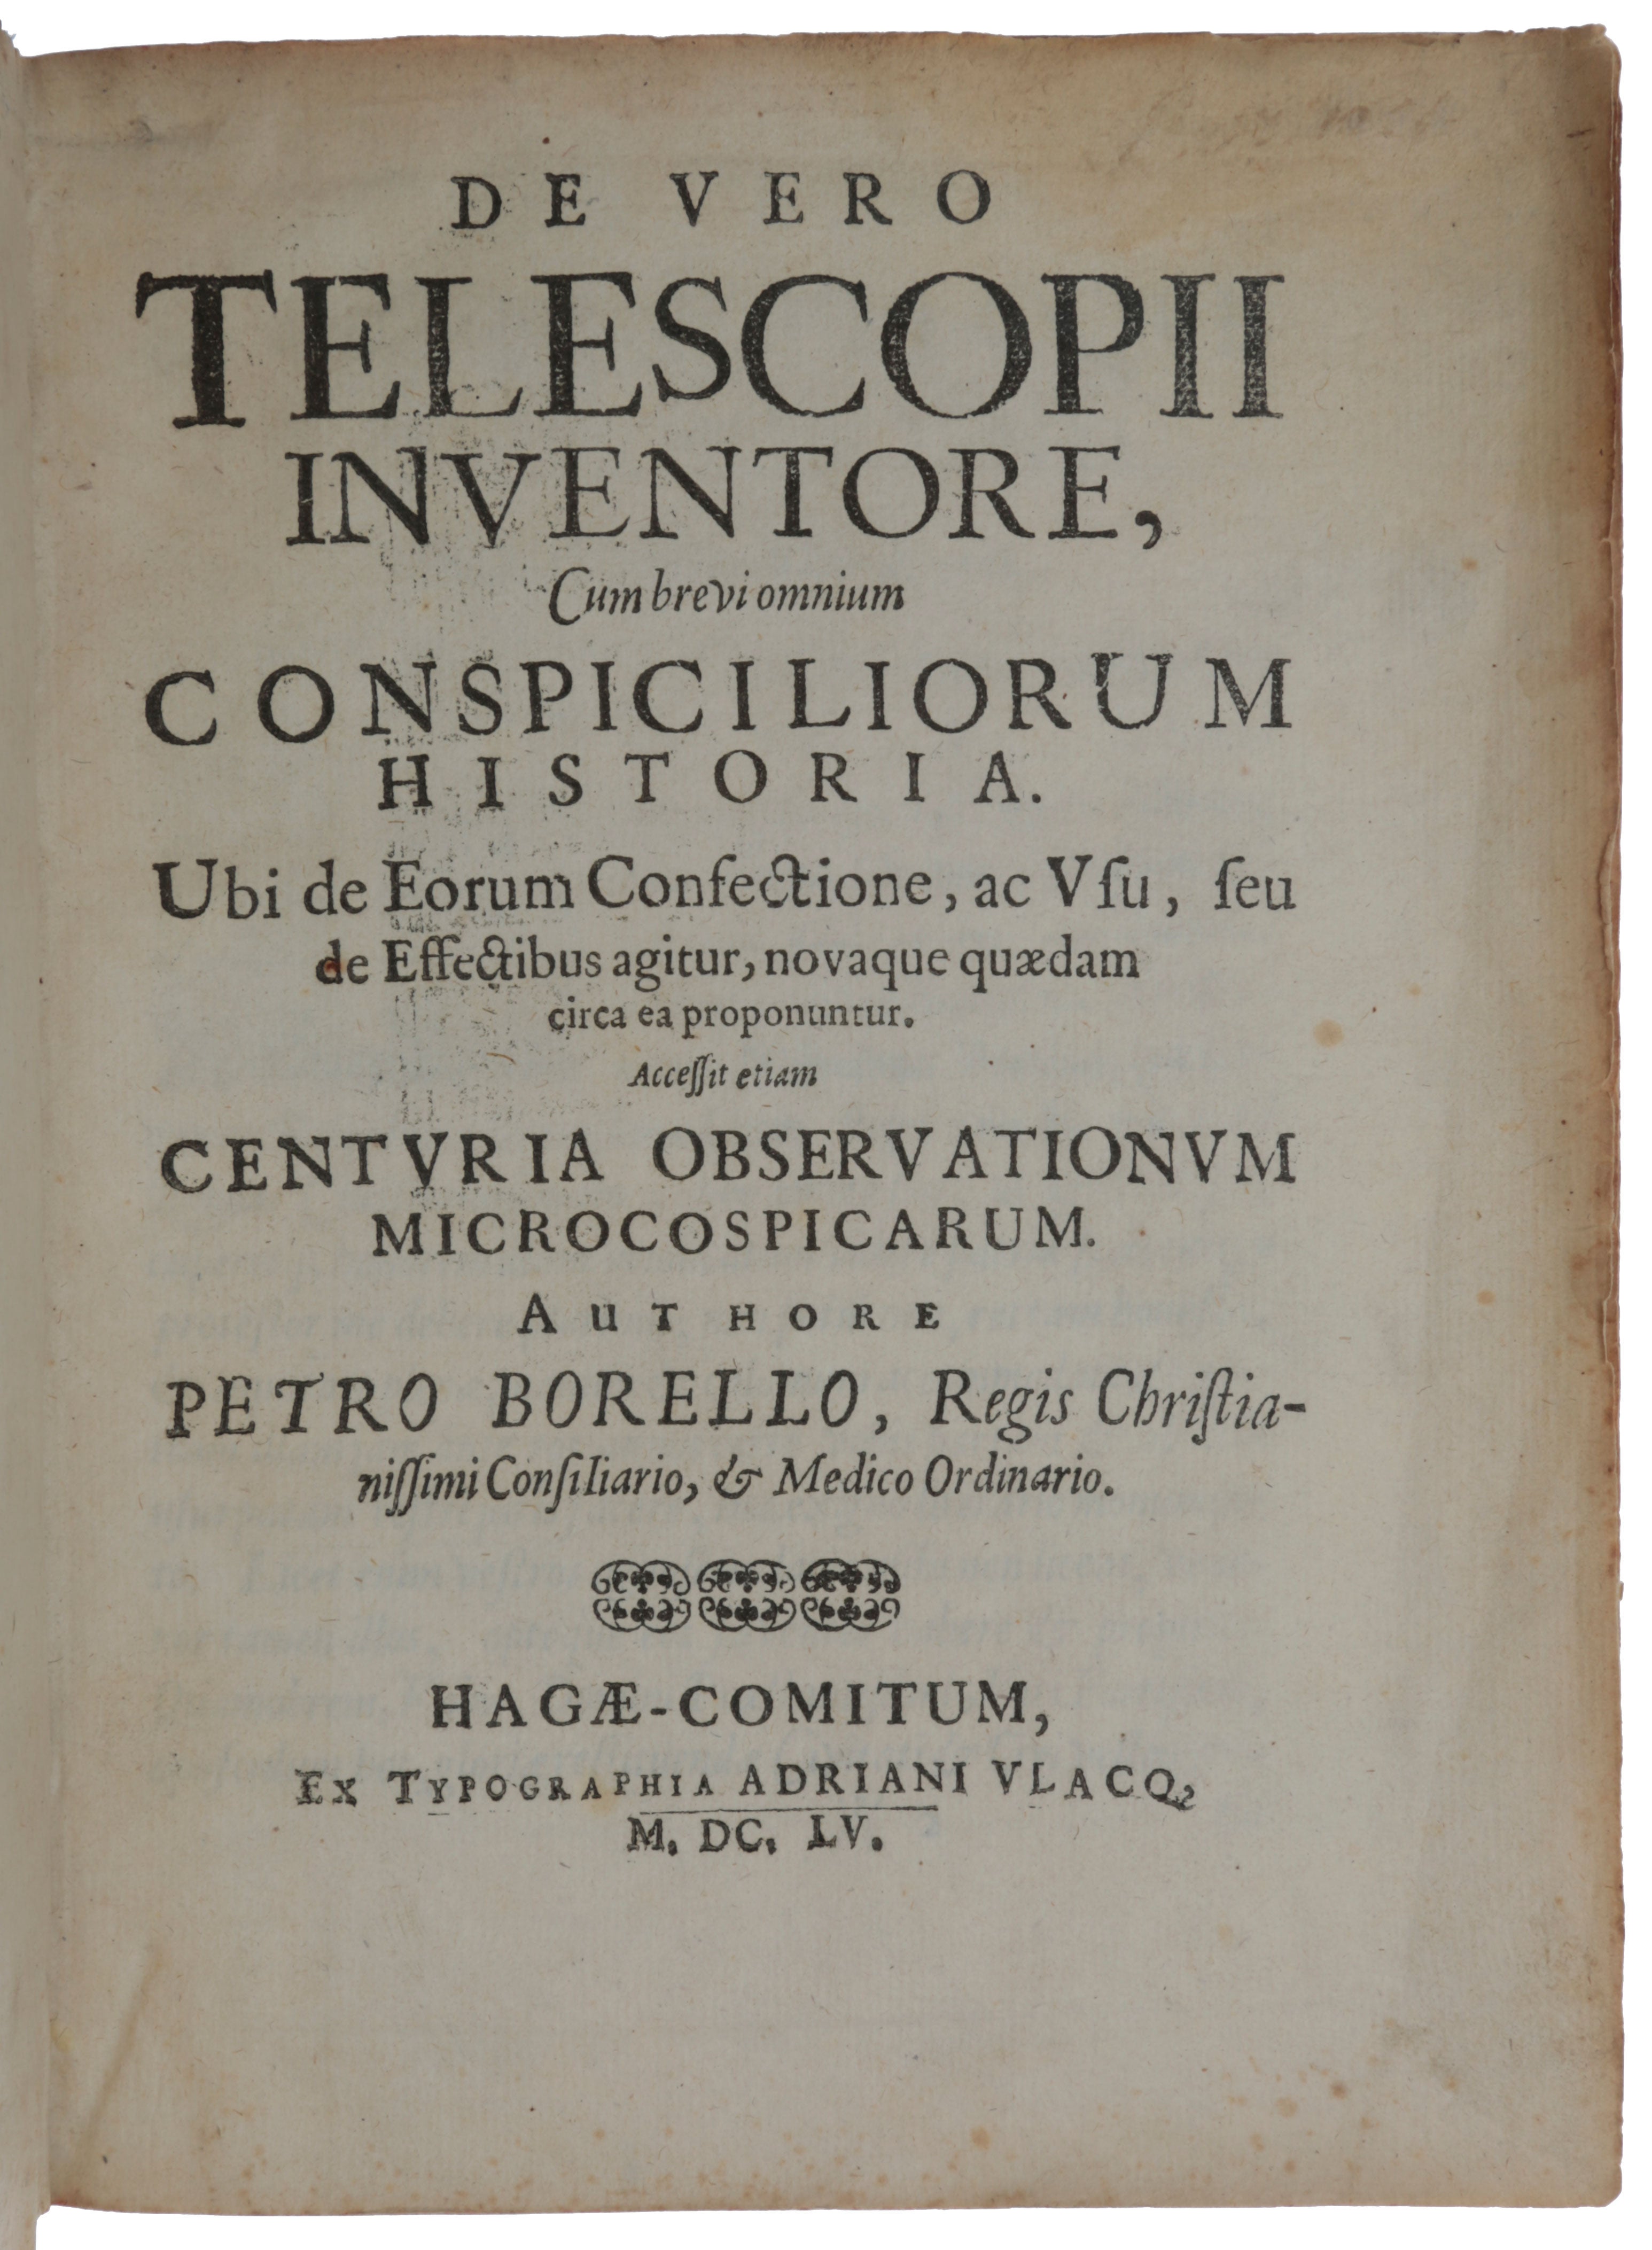 Item #5415 De vero telescopii inventore, cum brevi omnium conspiciliorum historia – Observationum microcospicarum centuria. Pierre BOREL.